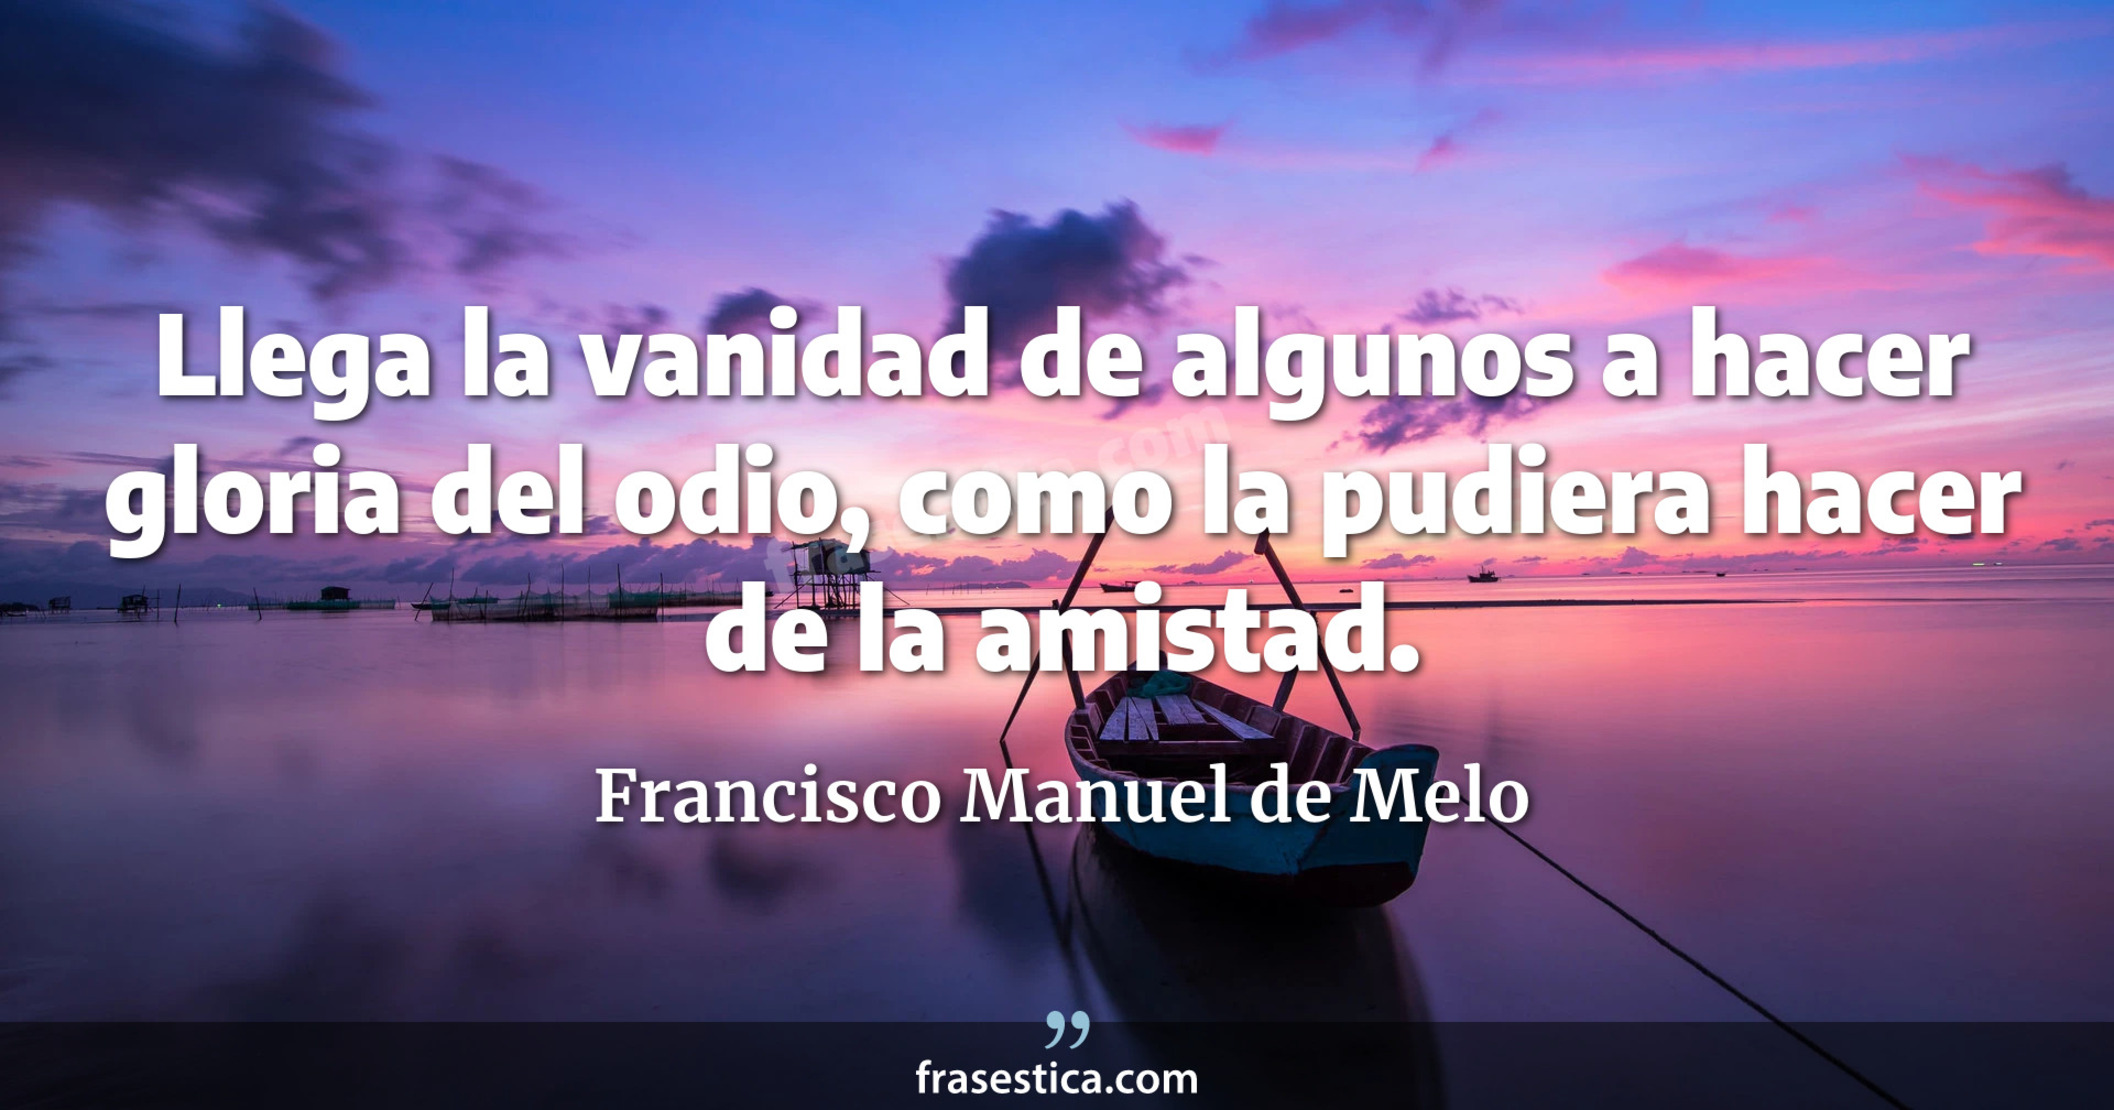 Llega la vanidad de algunos a hacer gloria del odio, como la pudiera hacer de la amistad. - Francisco Manuel de Melo